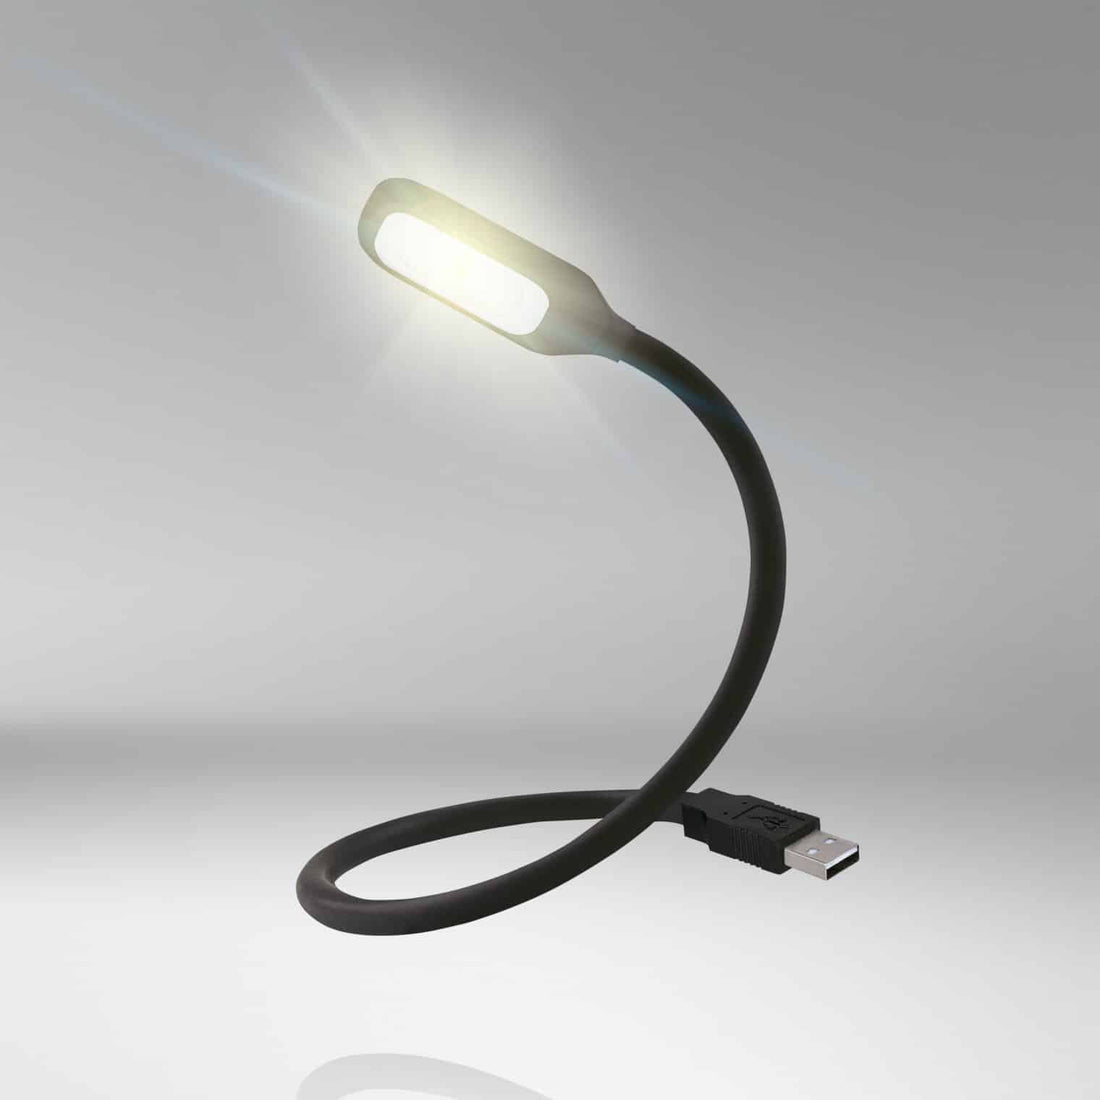 ONYX COPILOT USB LESELAMPE - fahrzeuglampen.com